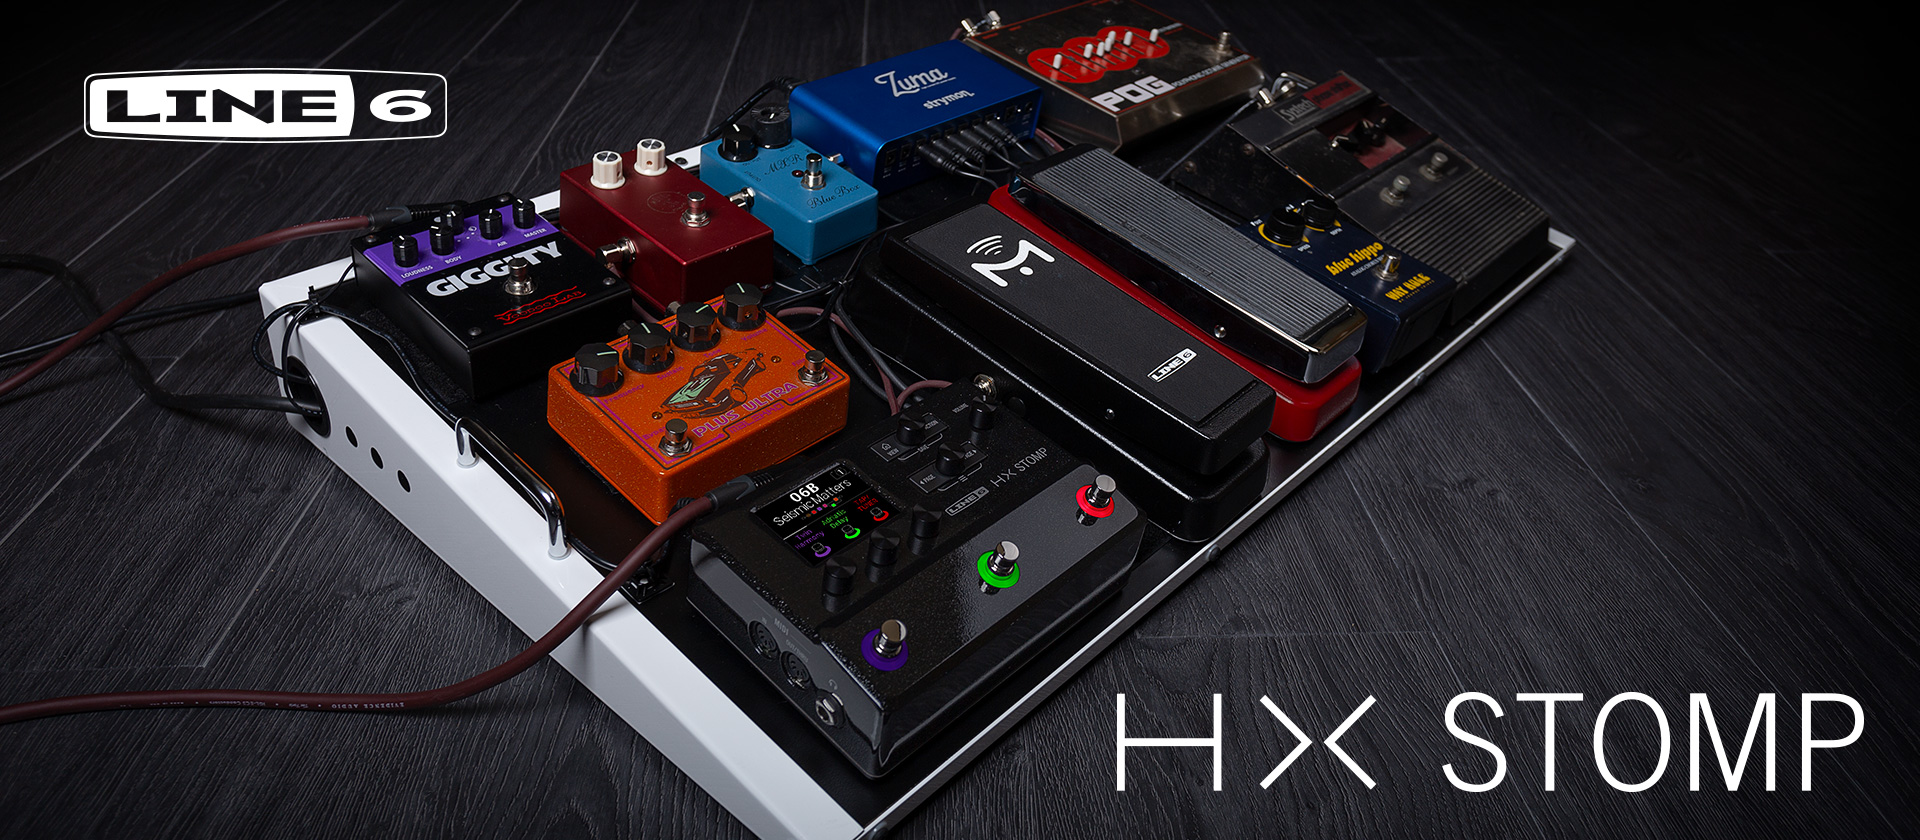 HX Stomp - новый компактный процессор из серии Helix  | A&T Trade